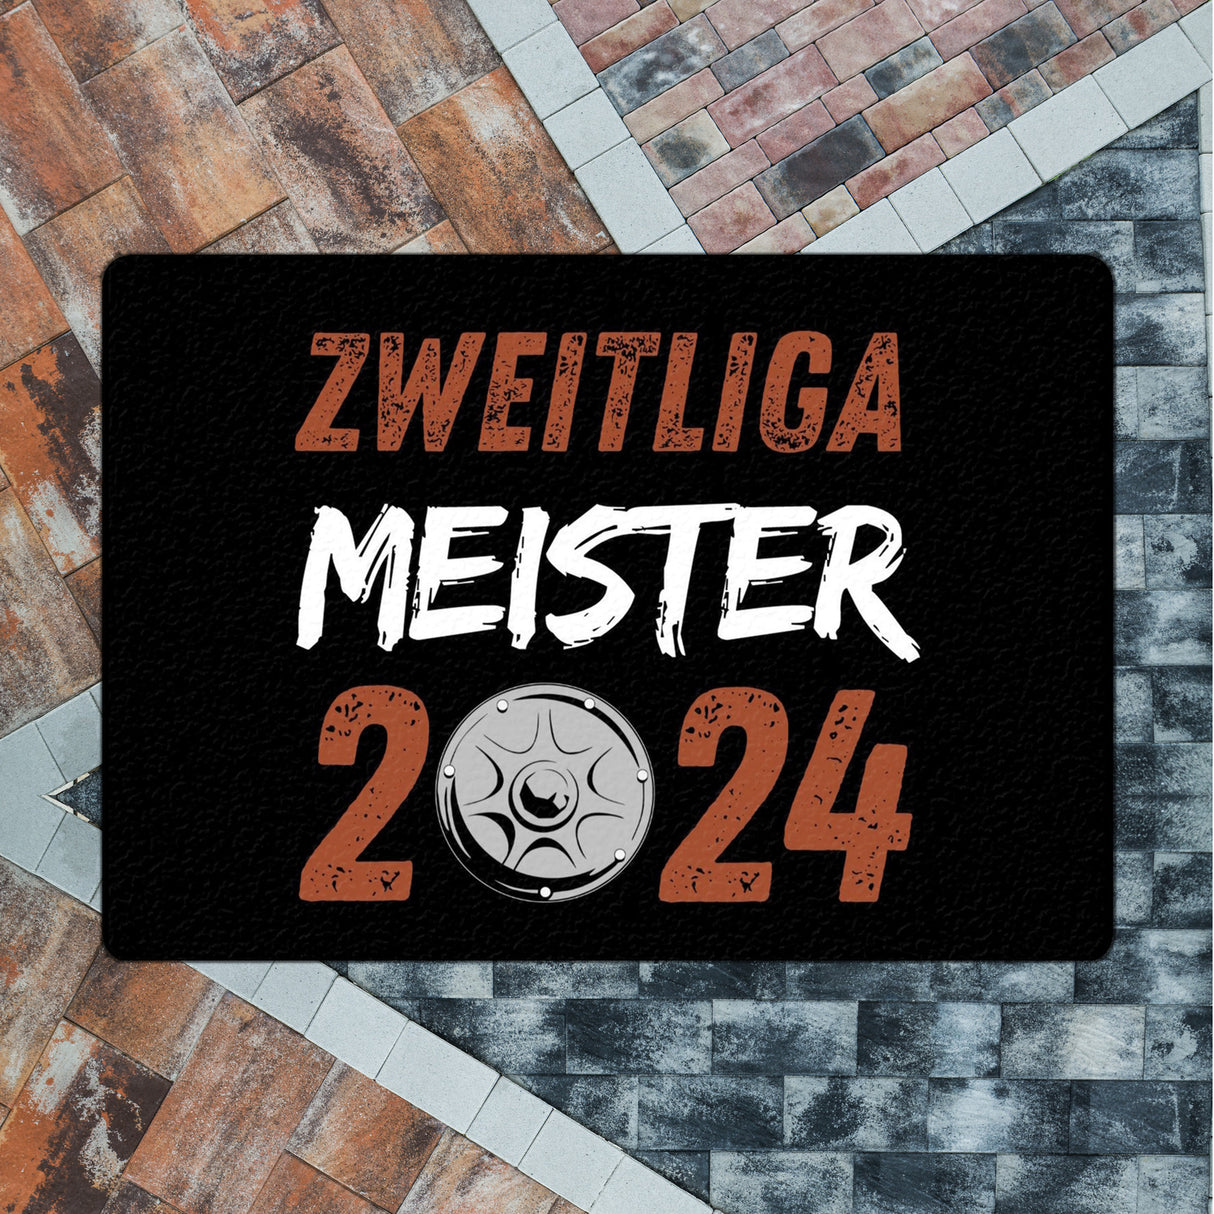 St. Pauli Meisterschale Fußmatte in 35x50 cm ohne Rand mit Spruch Zweitliga Meister 2024